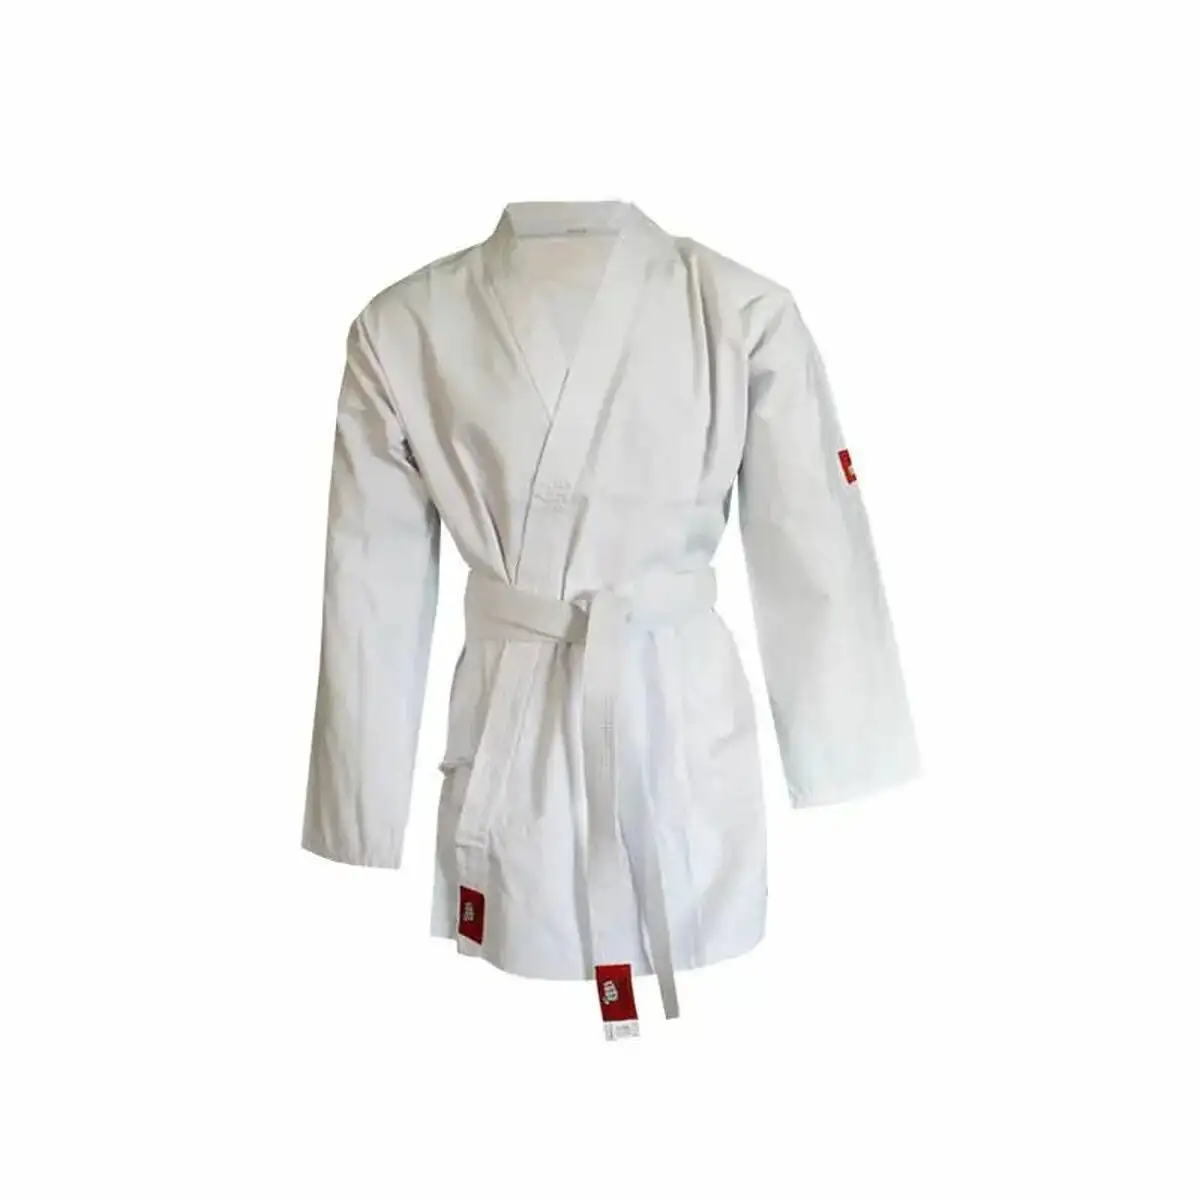 Kimono jim sports yoshiro karategui blanc 150 cm _3470. DIAYTAR SENEGAL - Votre Plaisir Shopping à Portée de Clic. Explorez notre boutique en ligne et trouvez des produits qui ajoutent une touche de bonheur à votre vie quotidienne.